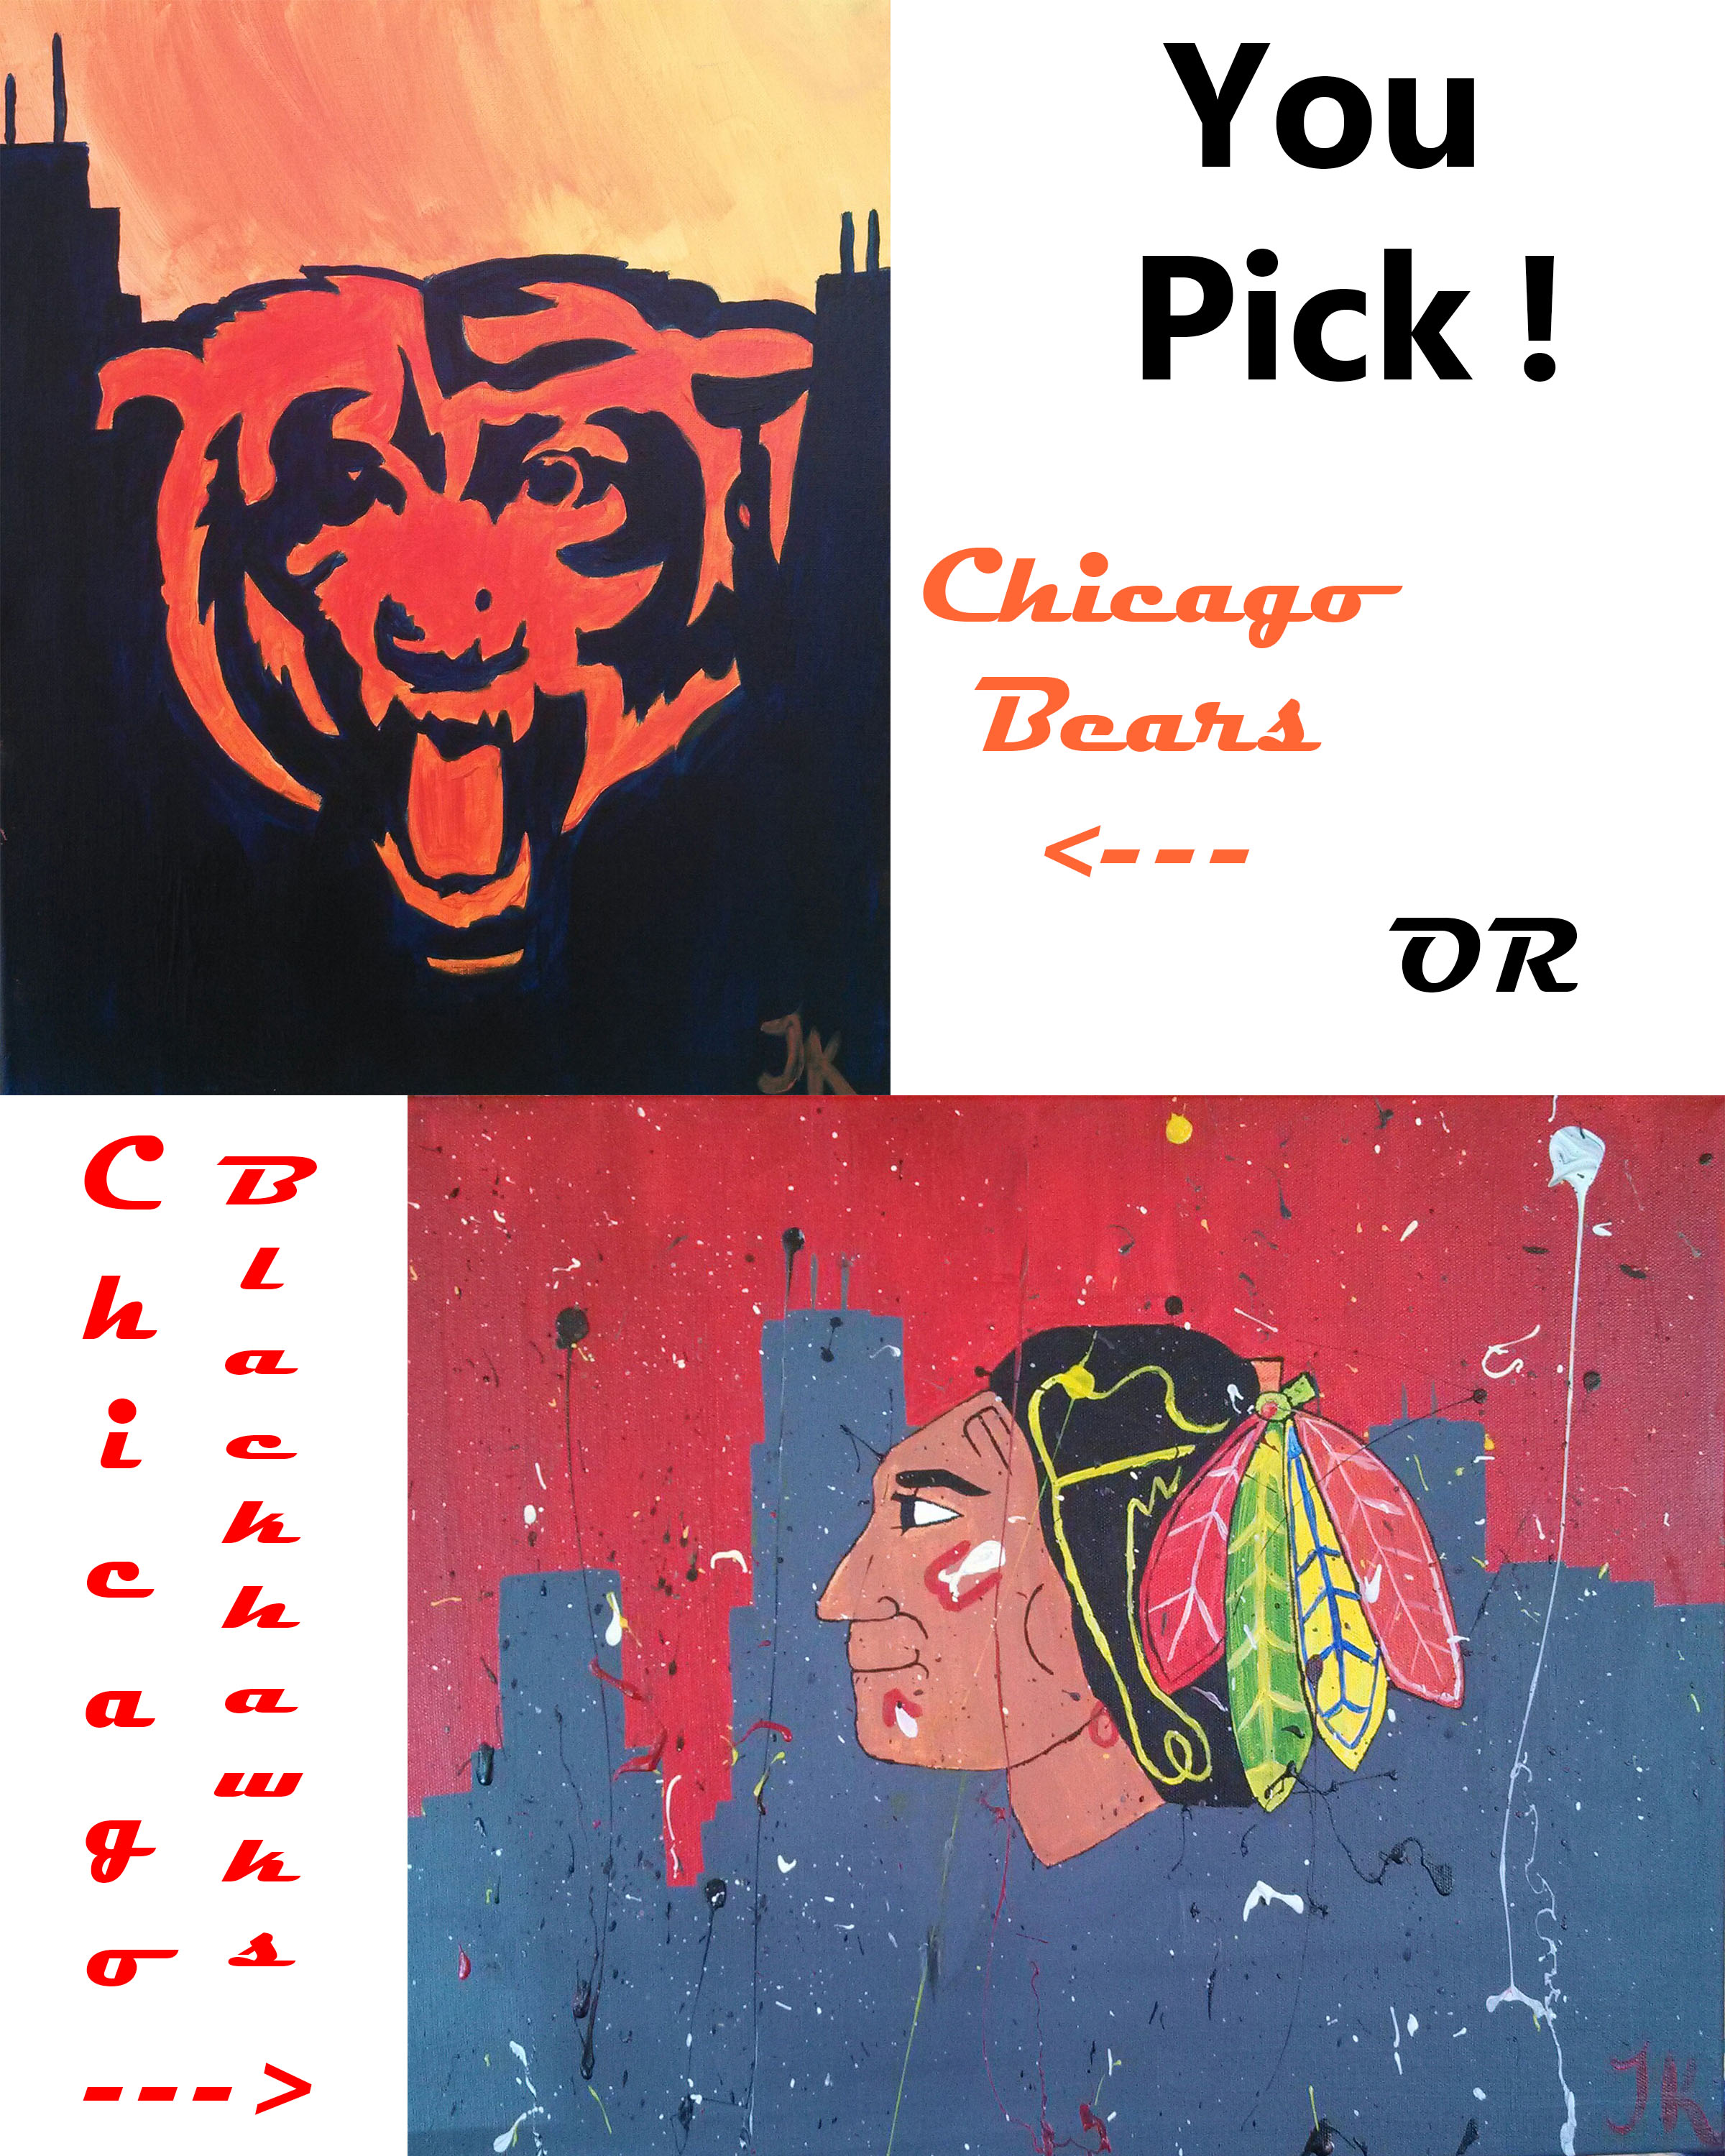 chicago bears blackhawks